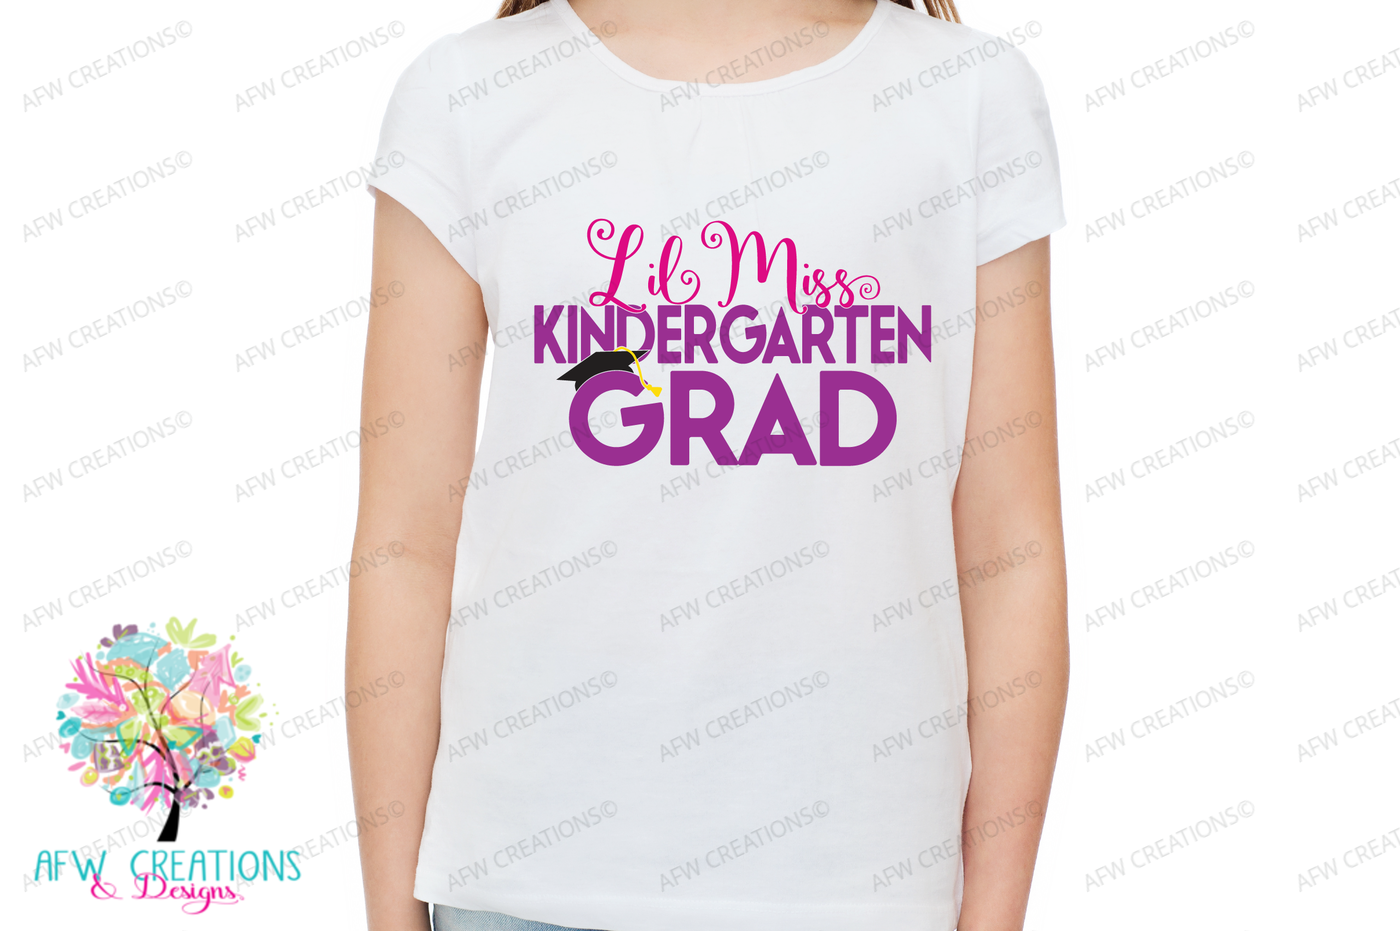 Free Free 290 Miss Kindergarten Kindergarten Grad Svg Free SVG PNG EPS DXF File